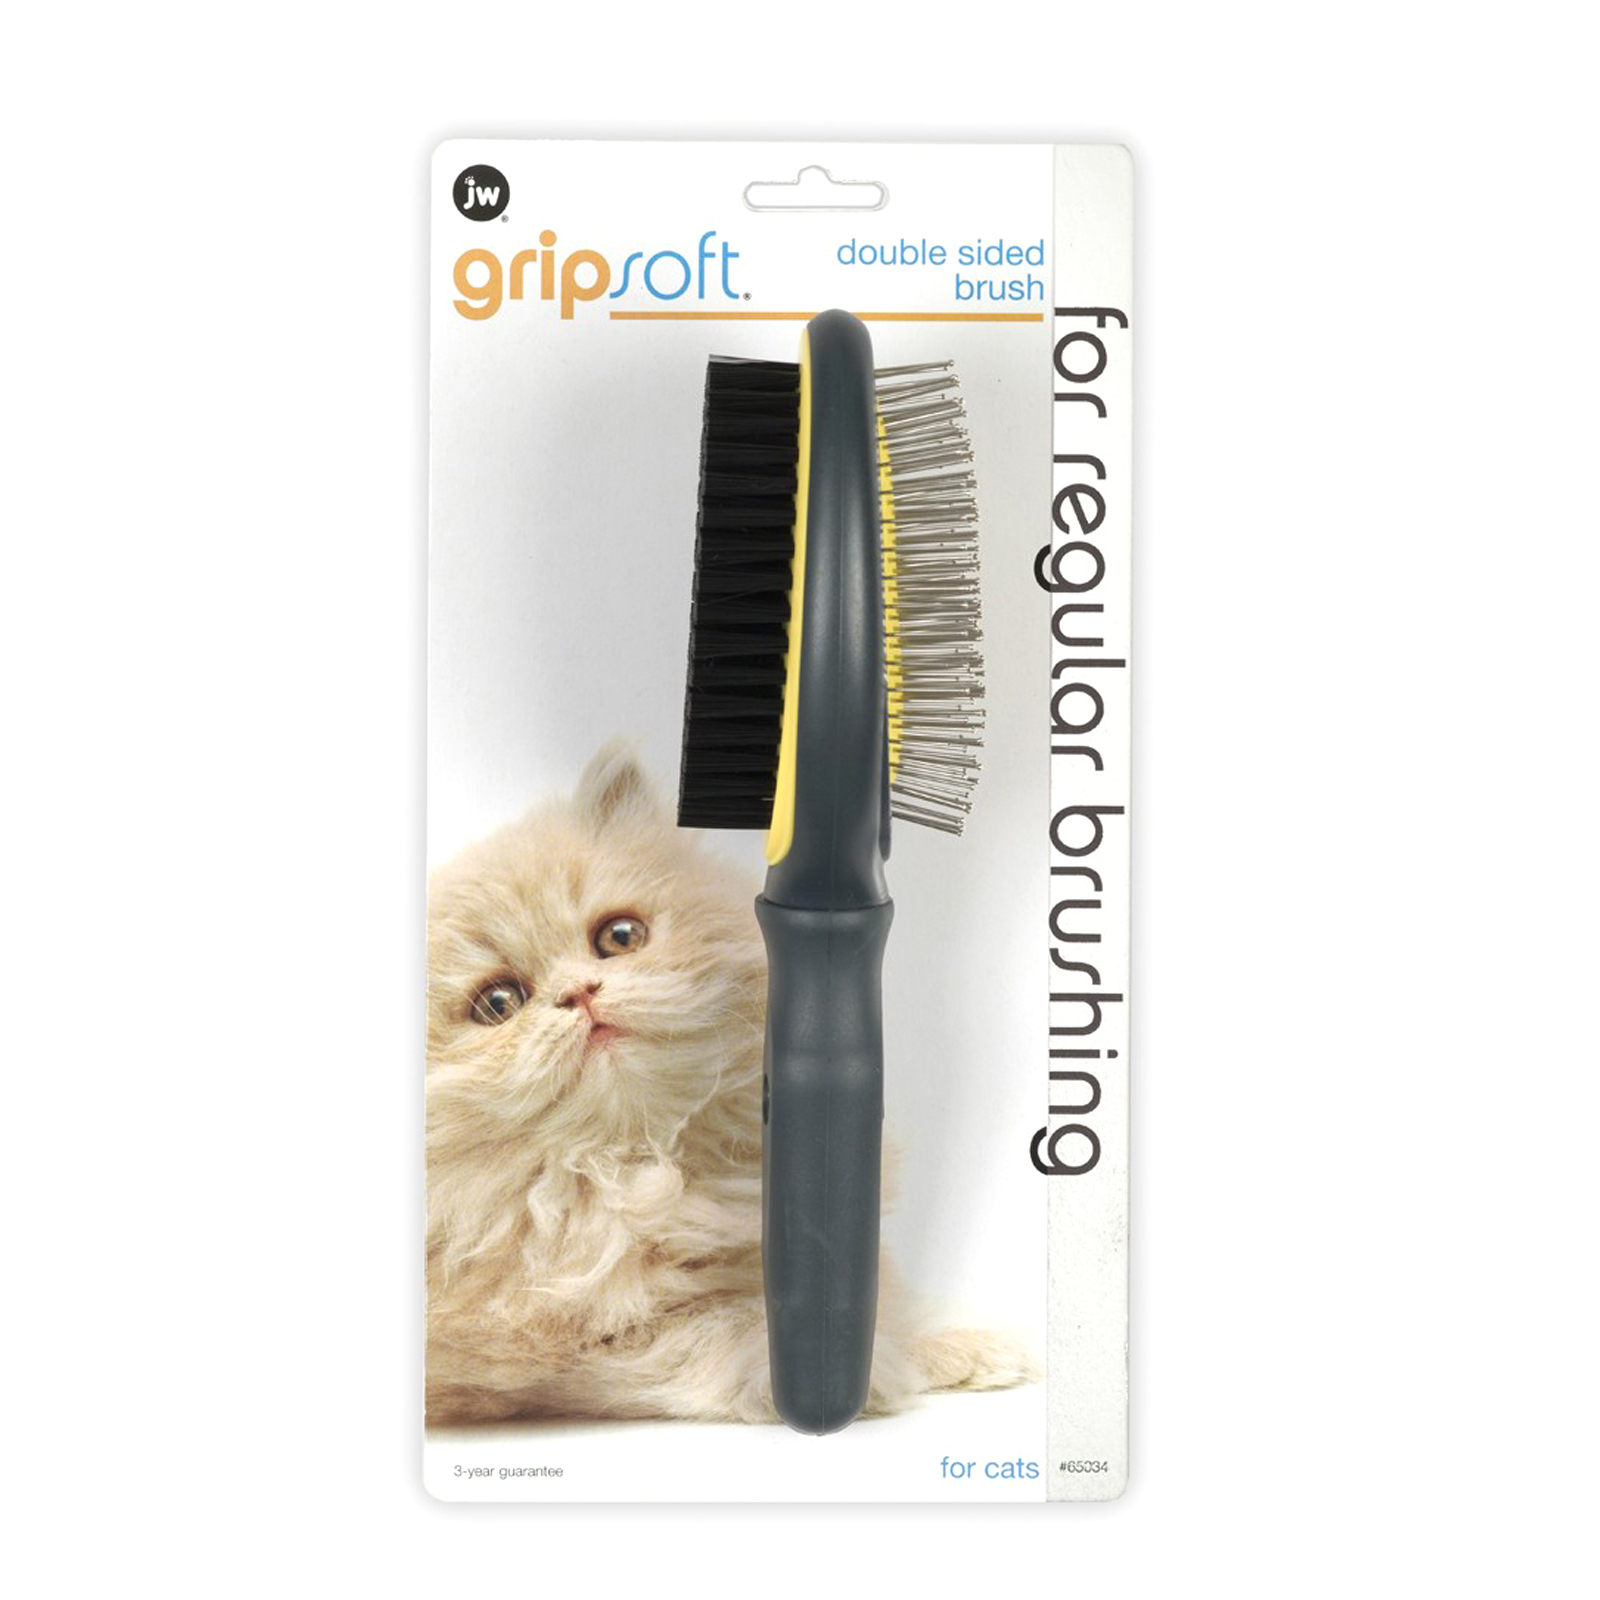 щетка массажная-щетиновая для кошек jw grip soft cat double sided brush (двусторонняя)